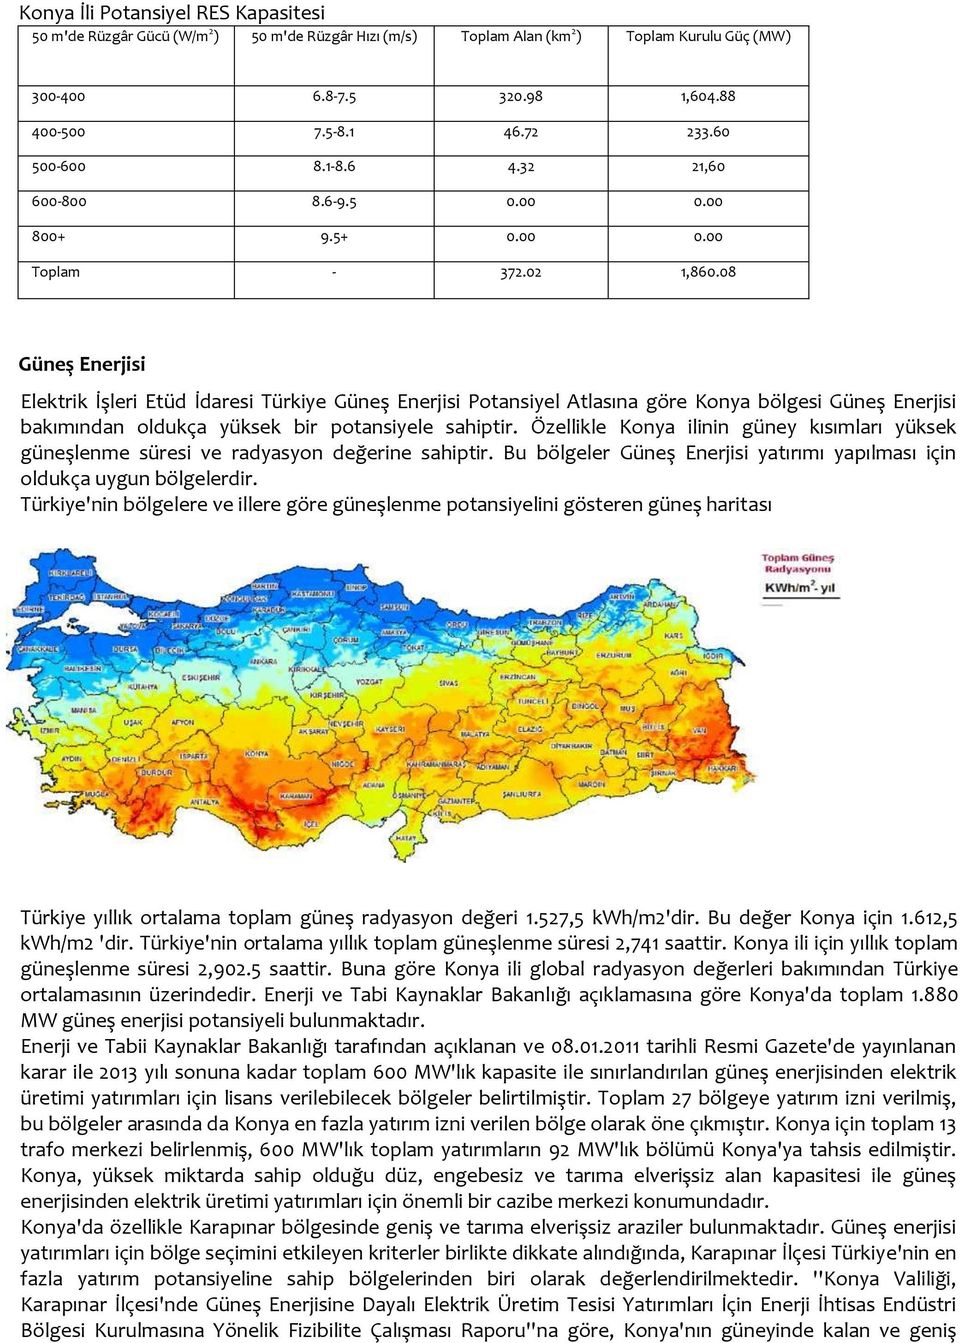 08 Güneş Enerjisi Elektrik İşleri Etüd İdaresi Türkiye Güneş Enerjisi Potansiyel Atlasına göre Konya bölgesi Güneş Enerjisi bakımından oldukça yüksek bir potansiyele sahiptir.